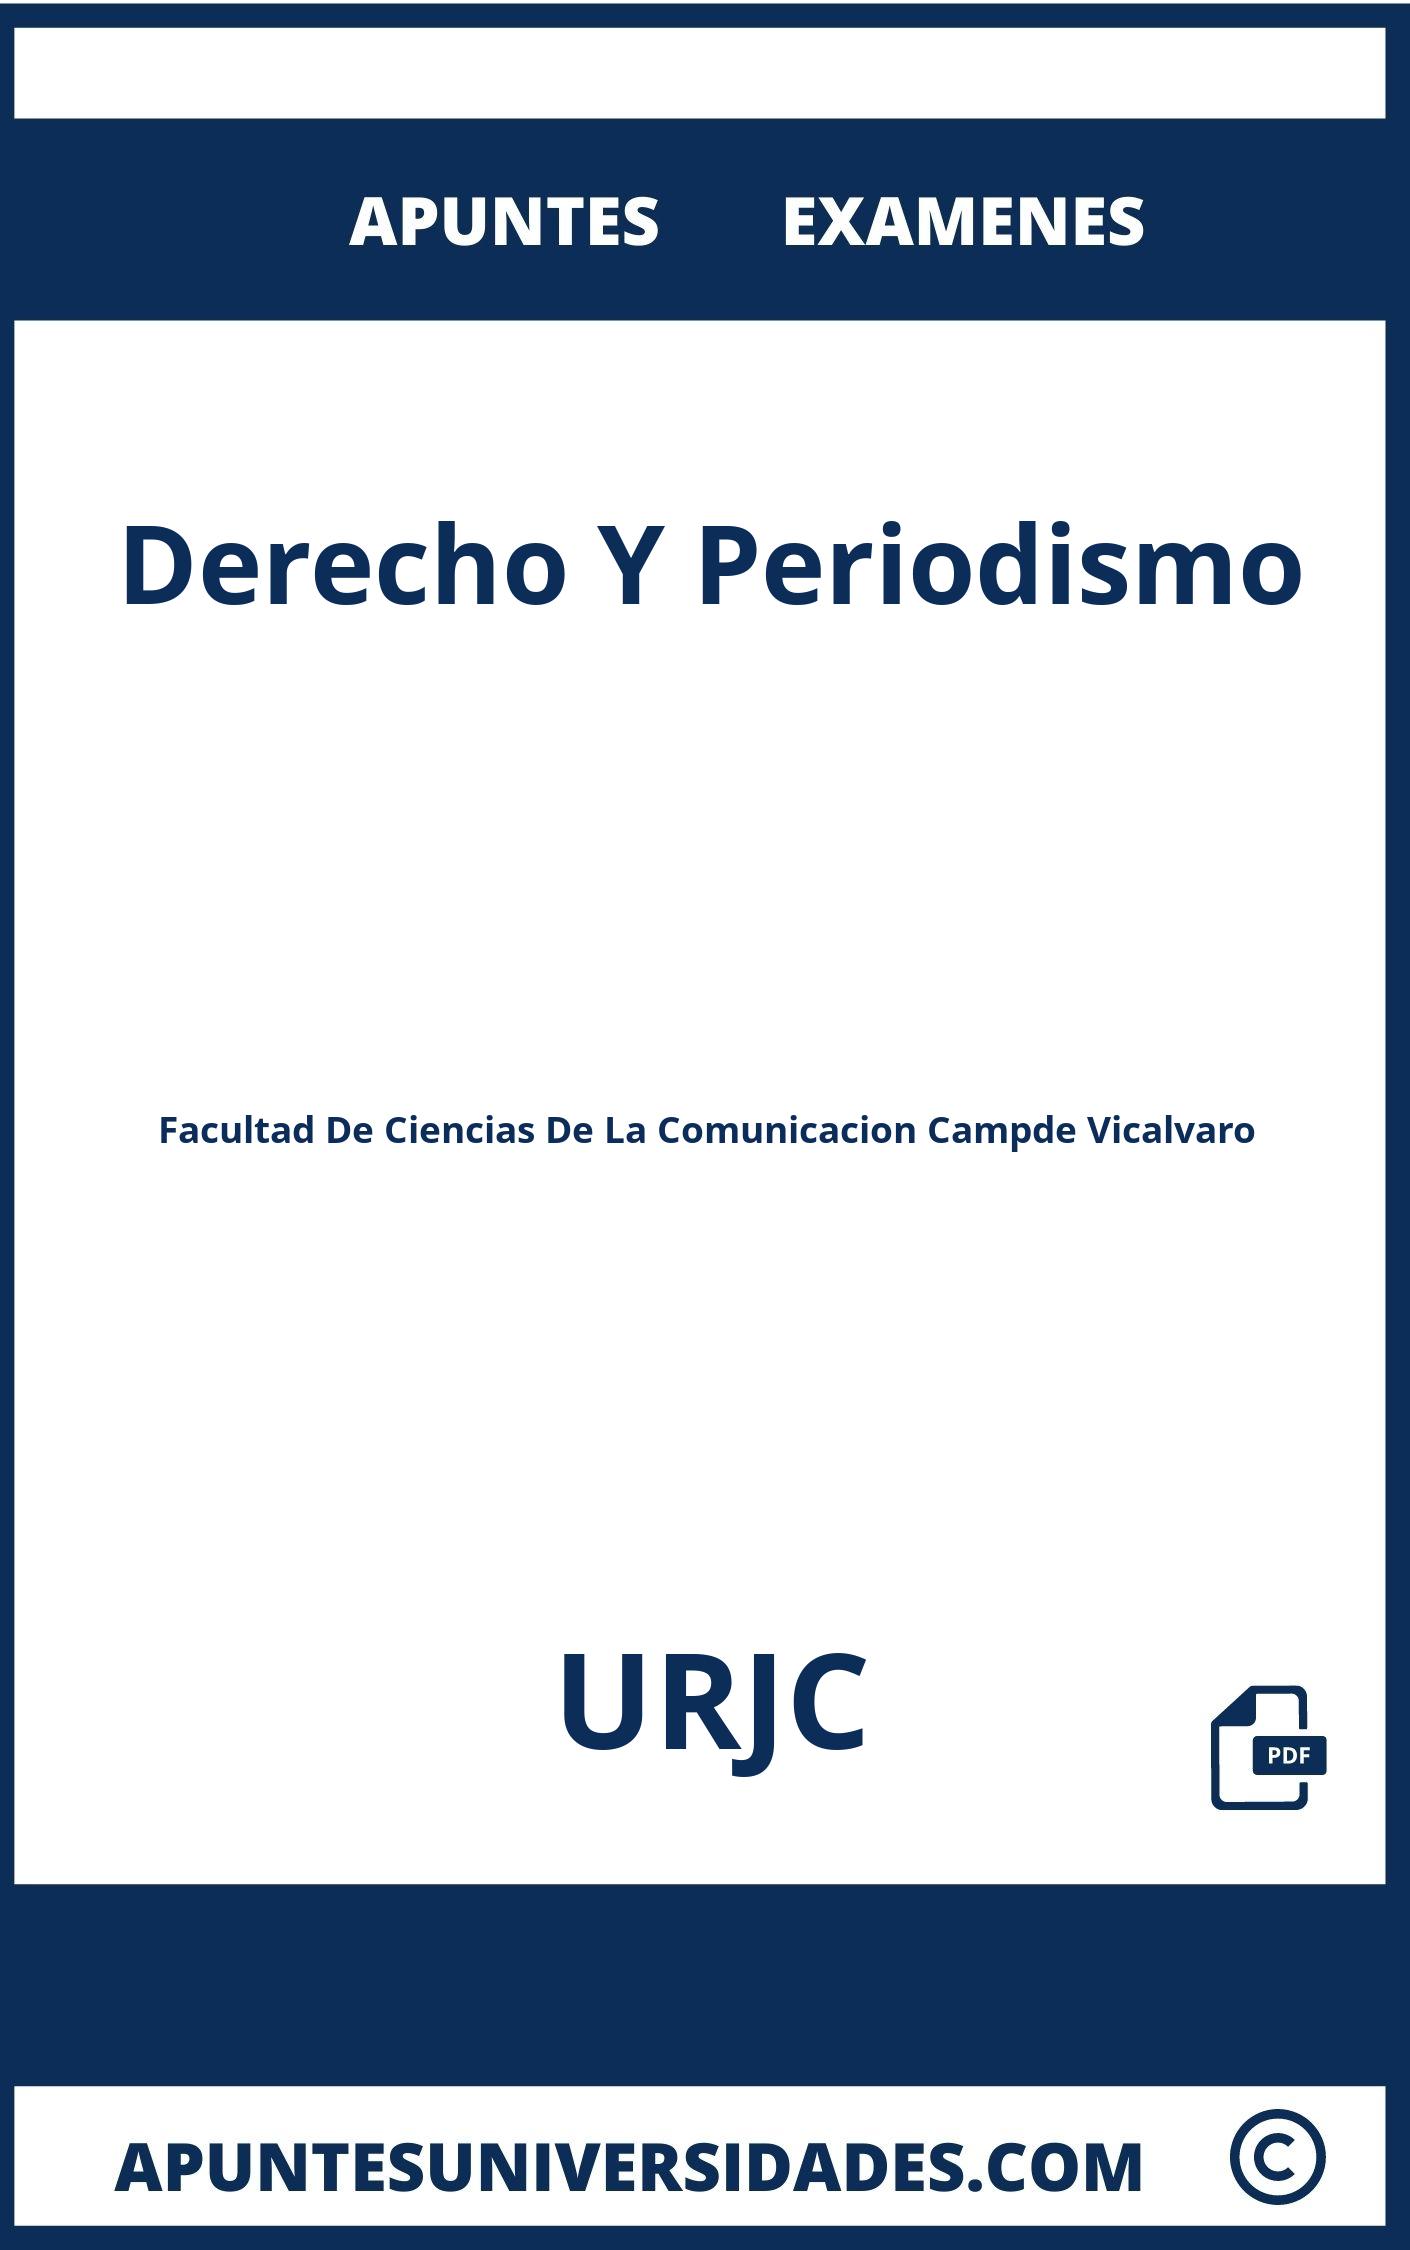 Apuntes y Examenes Derecho Y Periodismo URJC